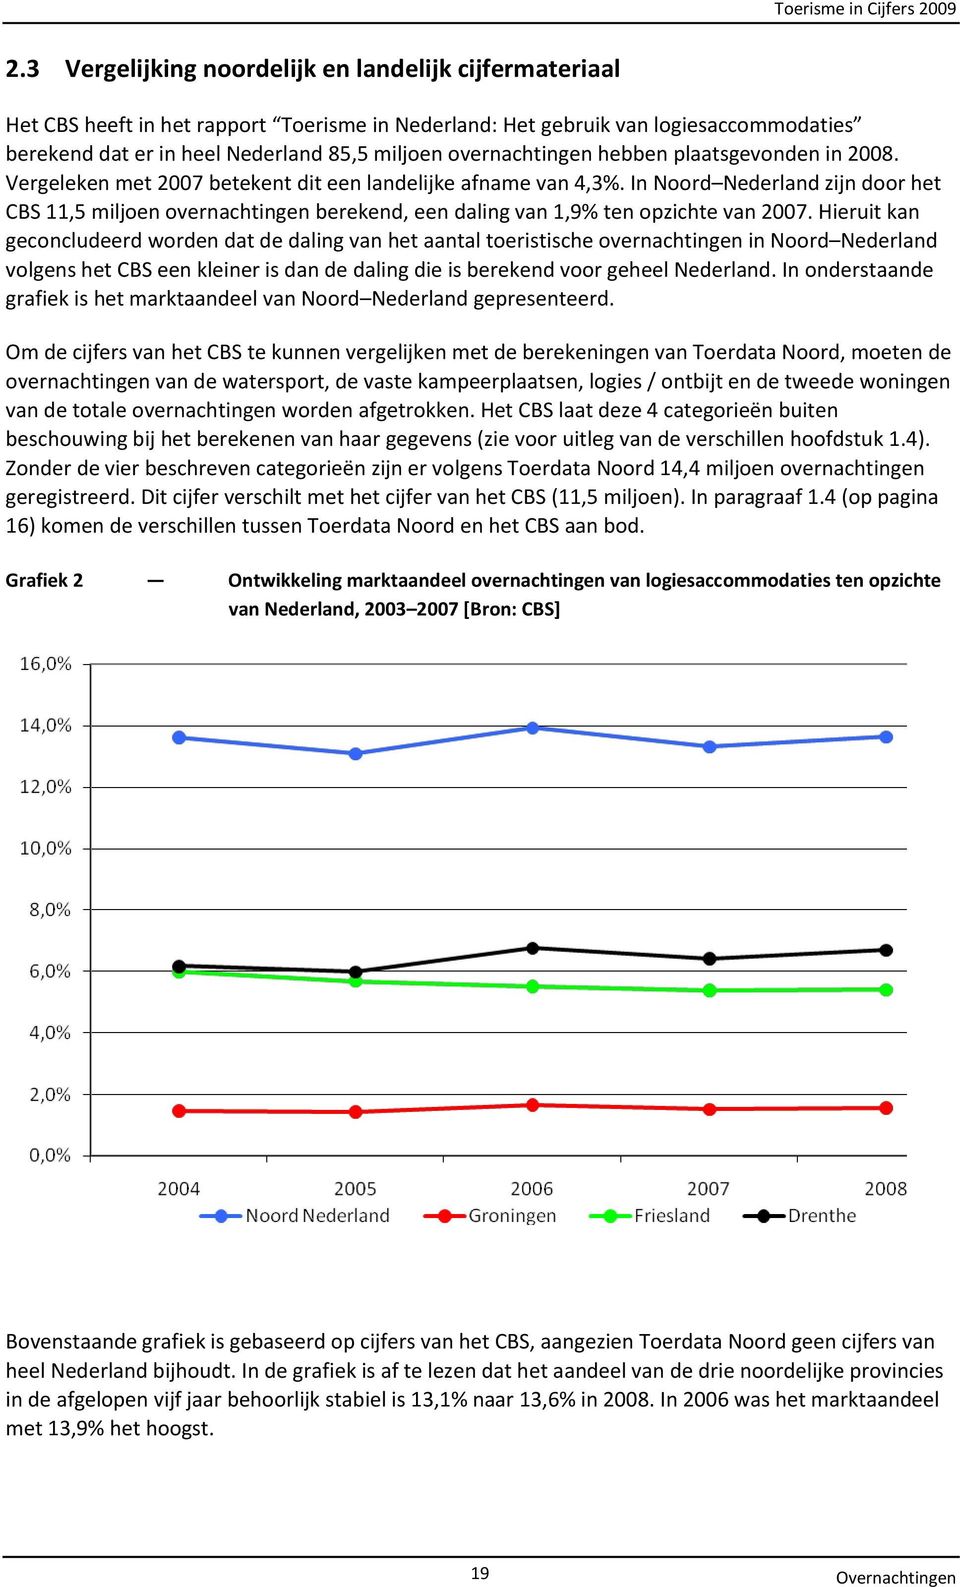 In Noord Nederland zijn door het CBS 11,5 miljoen overnachtingen berekend, een daling van 1,9% ten opzichte van 2007.